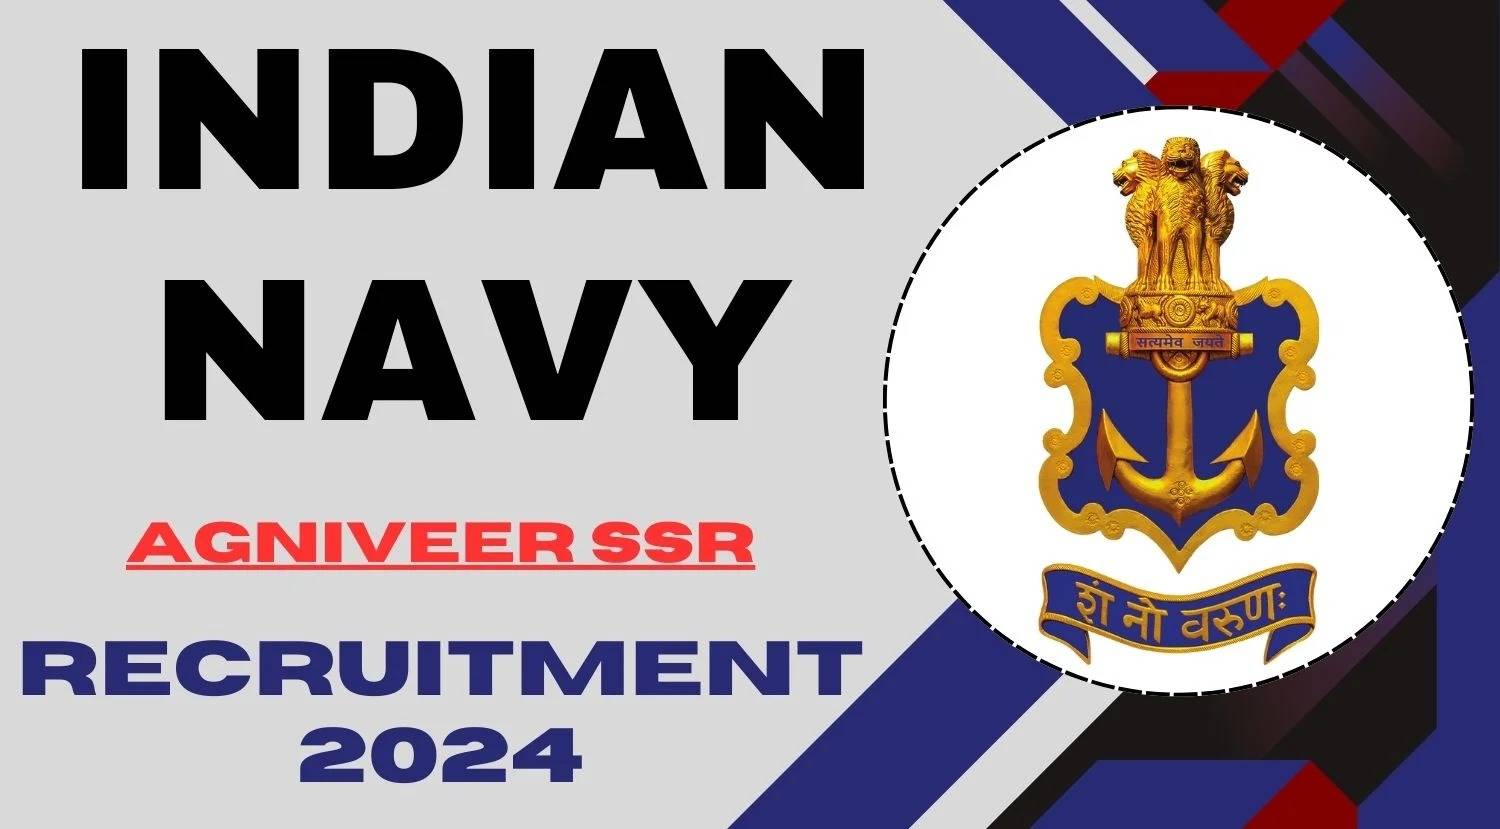 Indian Navy SSR 02/2024 Registration: Last Date Extended for Agniveer Online Form